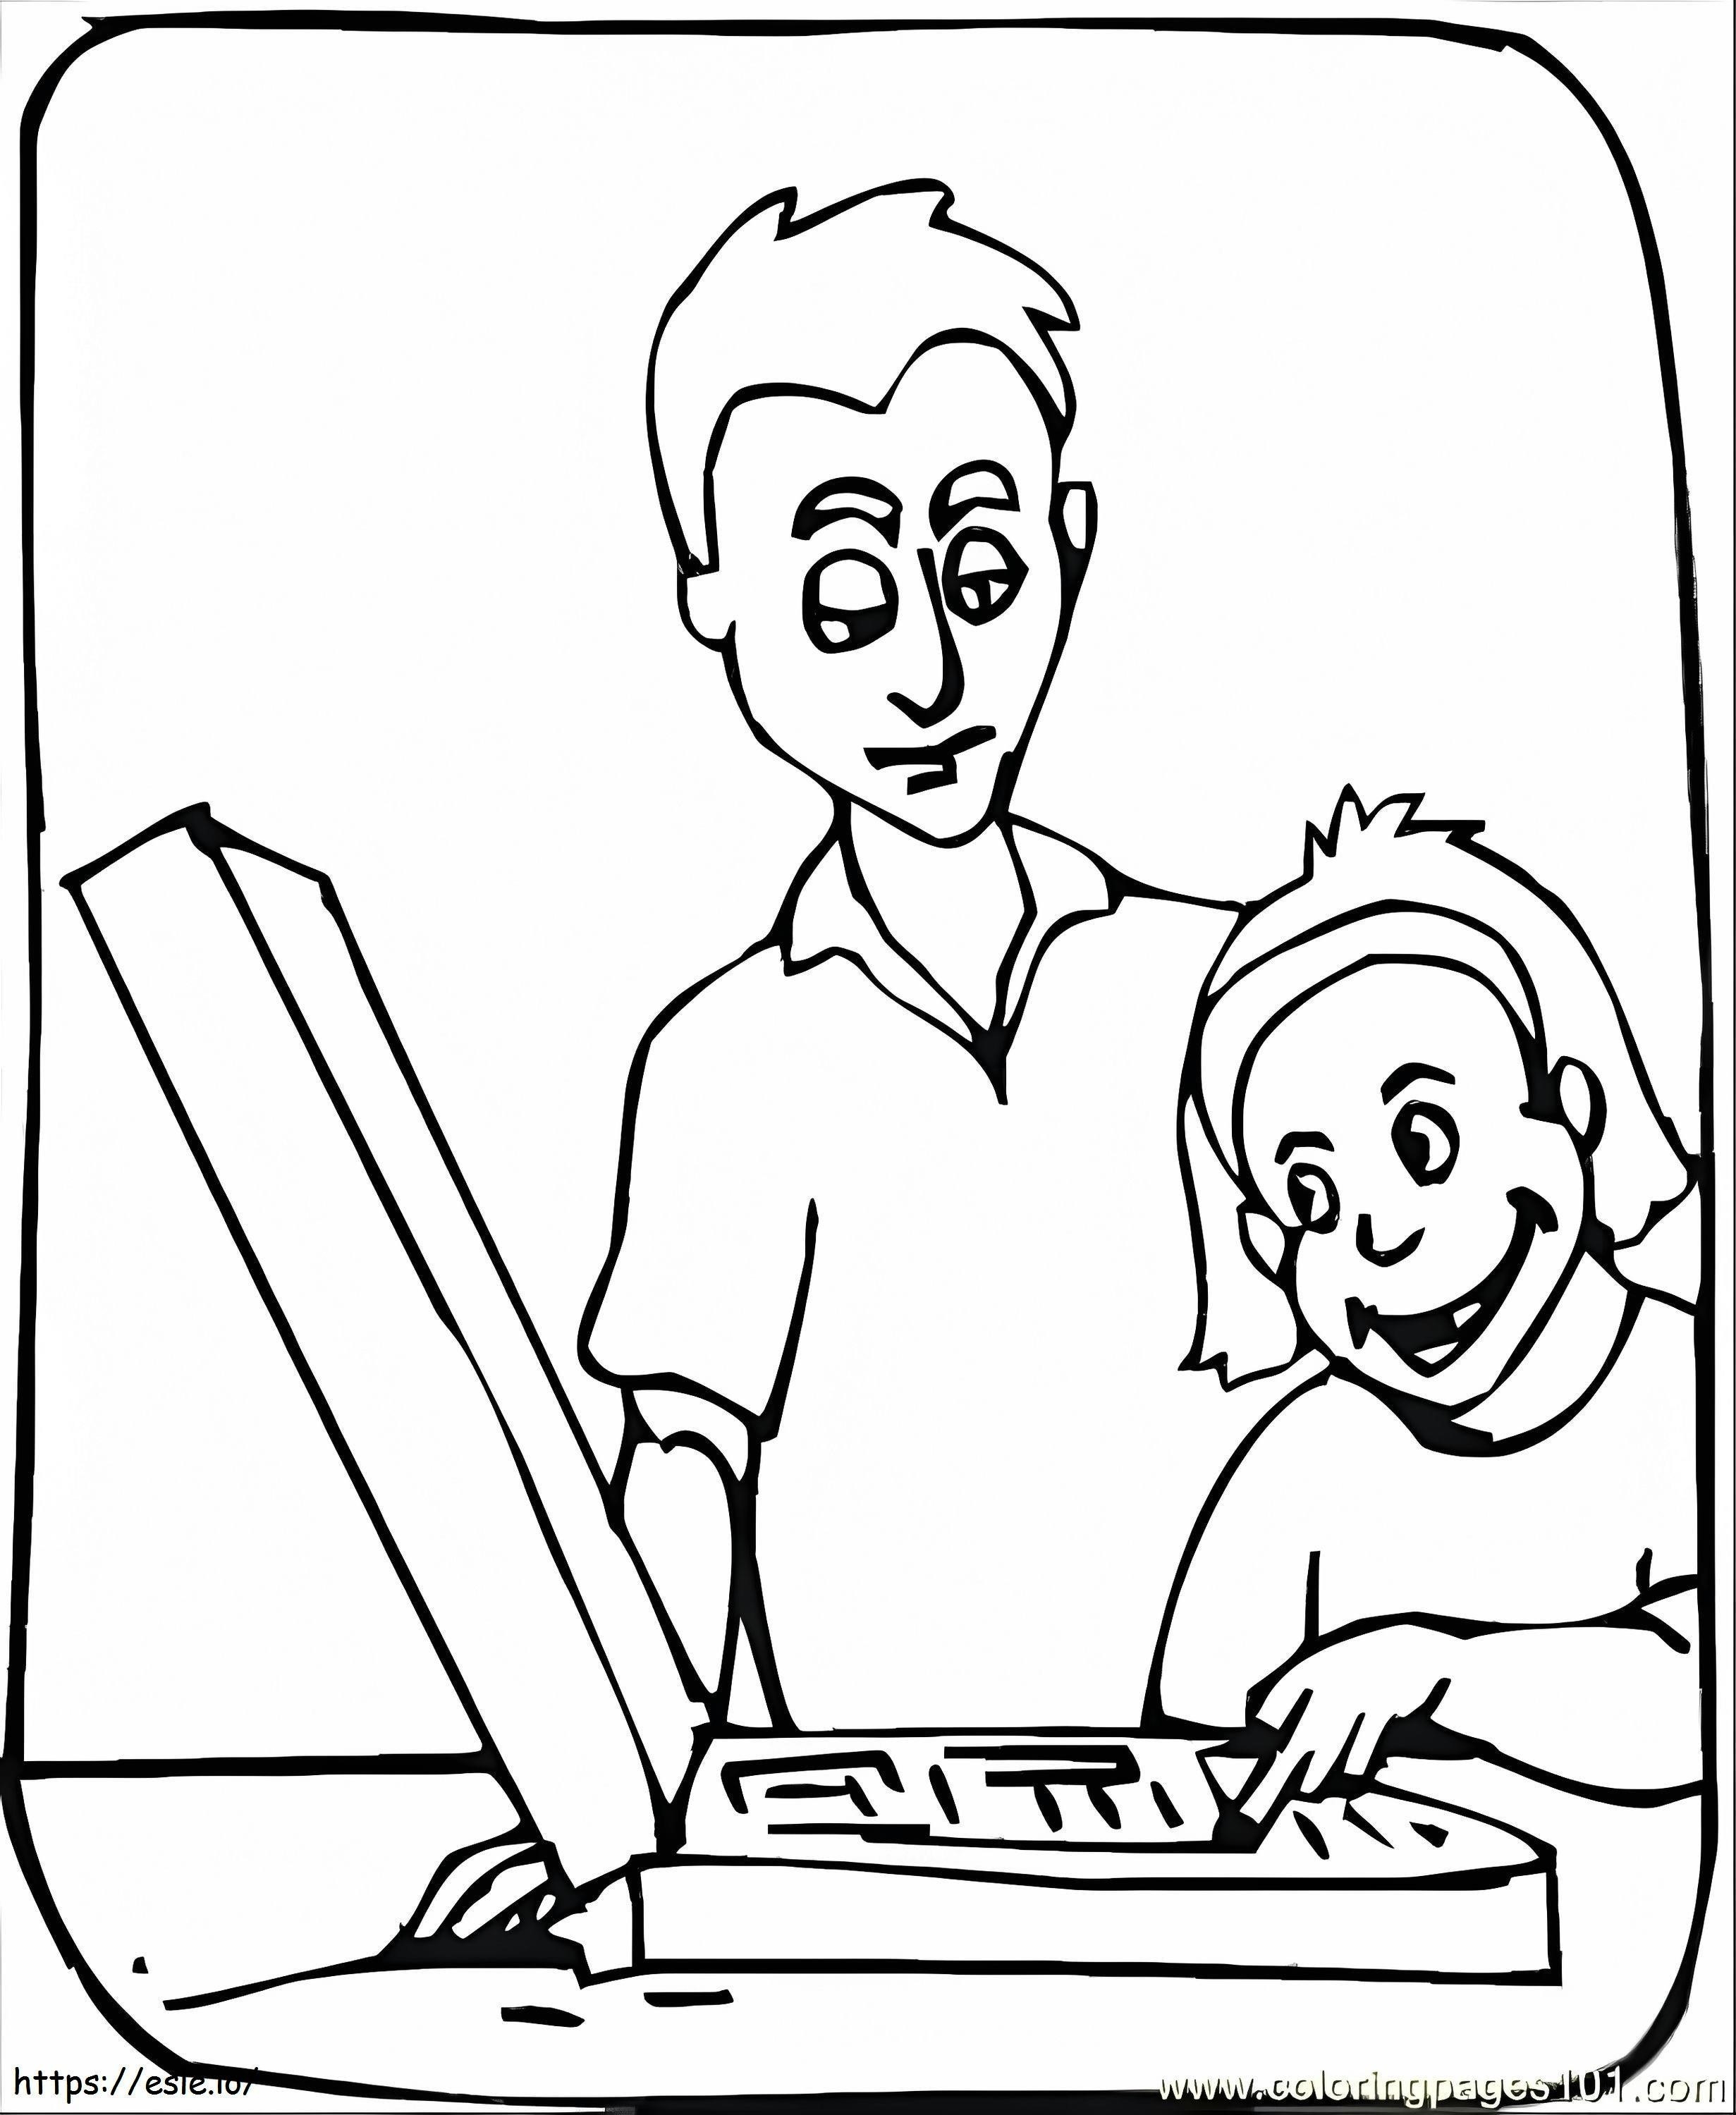 Ojciec uczy syna, jak korzystać z laptopa kolorowanka